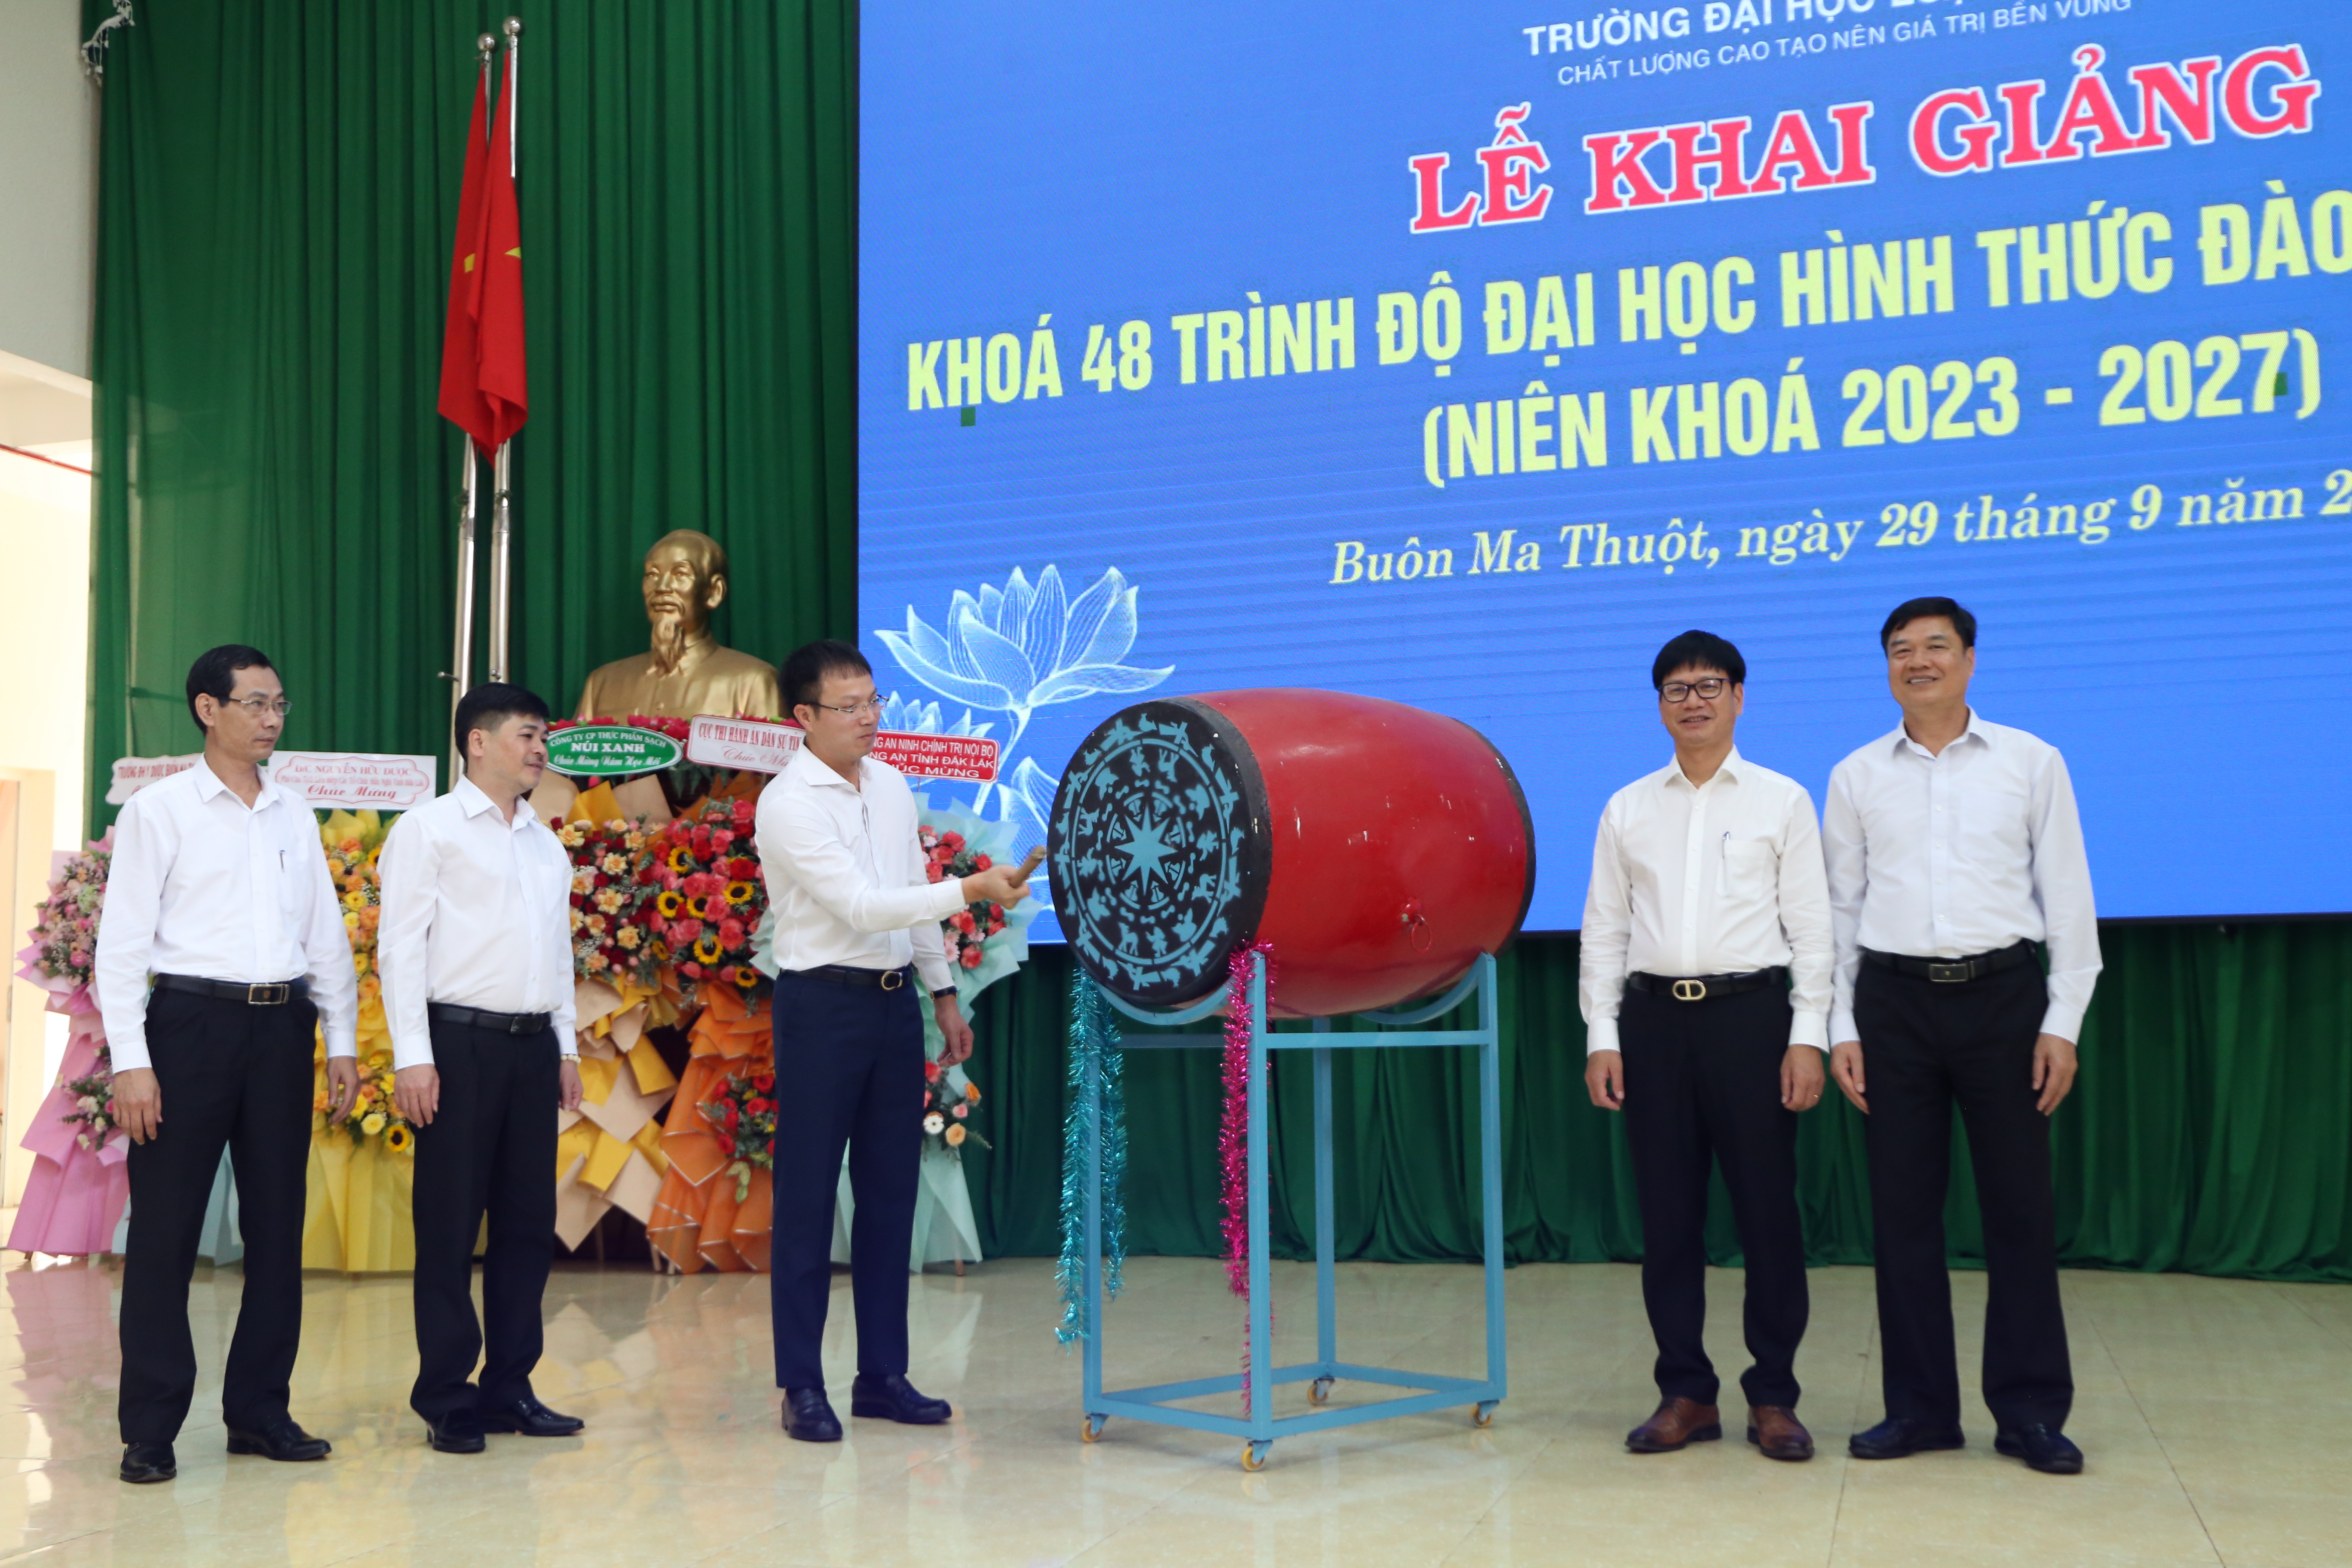 Trường Đại học Luật Hà Nội phân hiệu tại Đắk Lắk khai giảng khóa 48 (niên khóa 2023 – 2027)